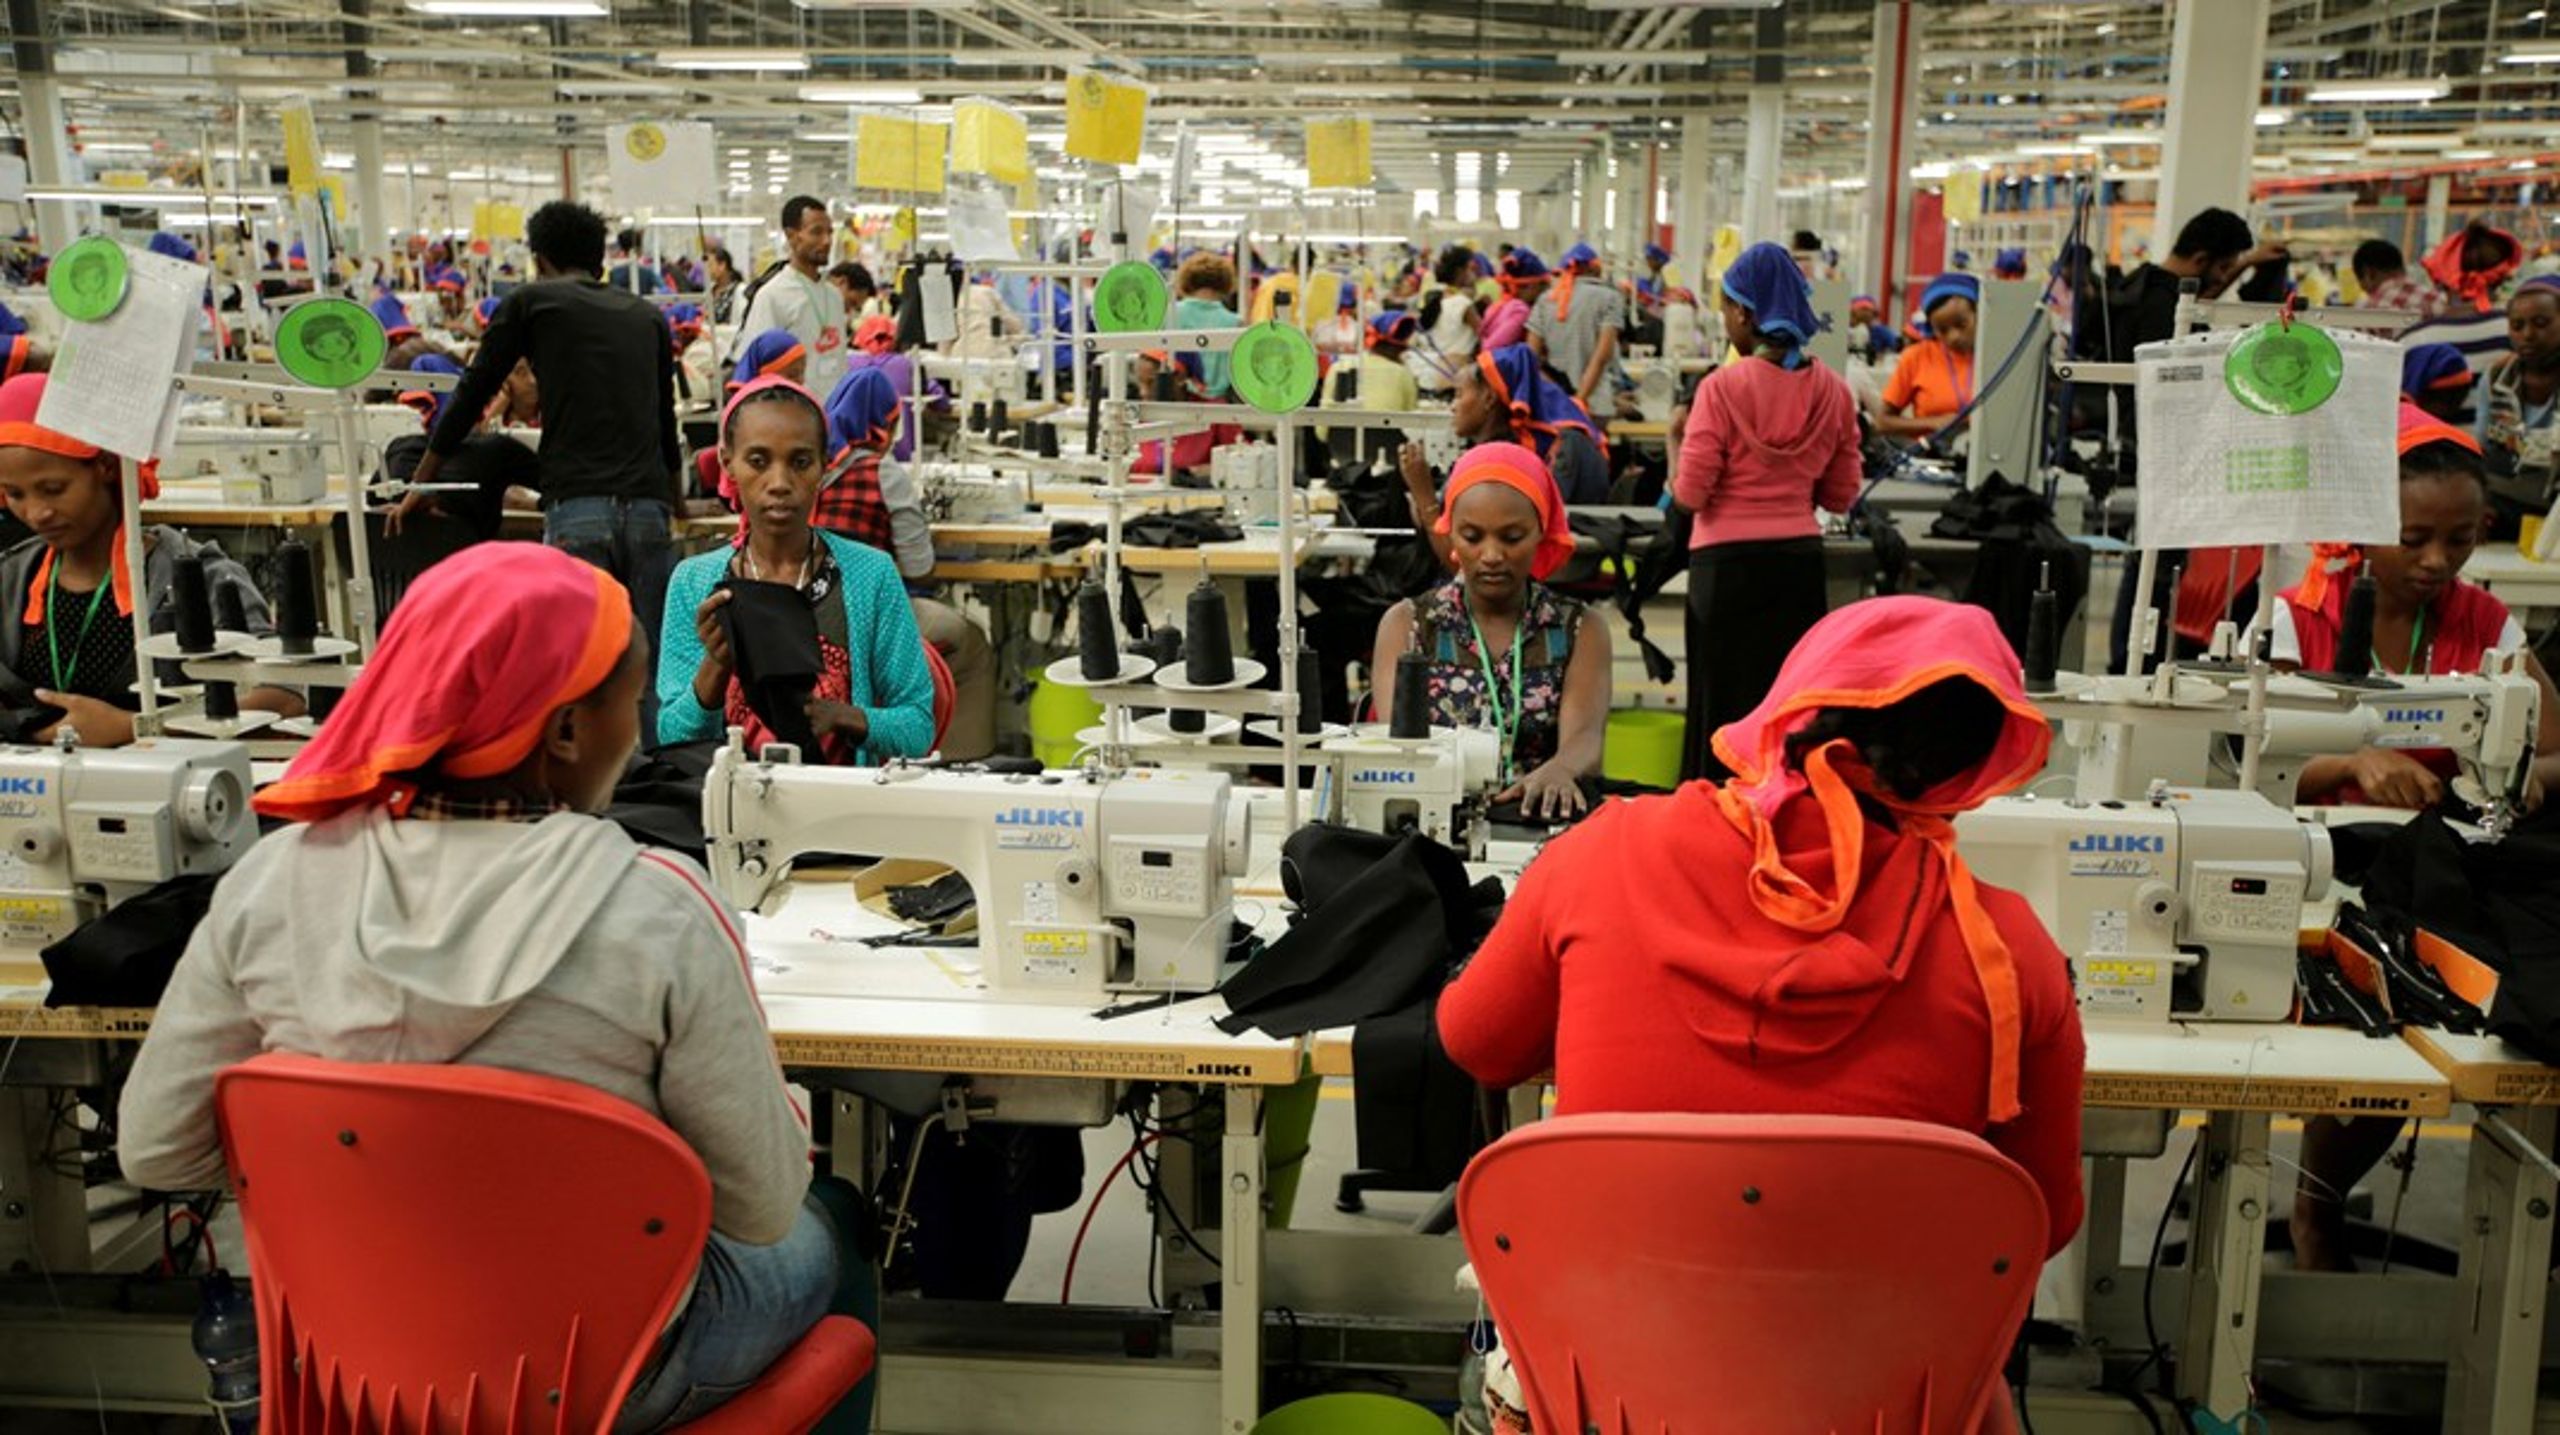 Millioner af jobs i blandt andet Etiopien kan blive tabt på grund af covid-19. Derfor er fokus på bæredygtig handel og jobskabelse vigtigt, skriver Nanna Callisen Bang.